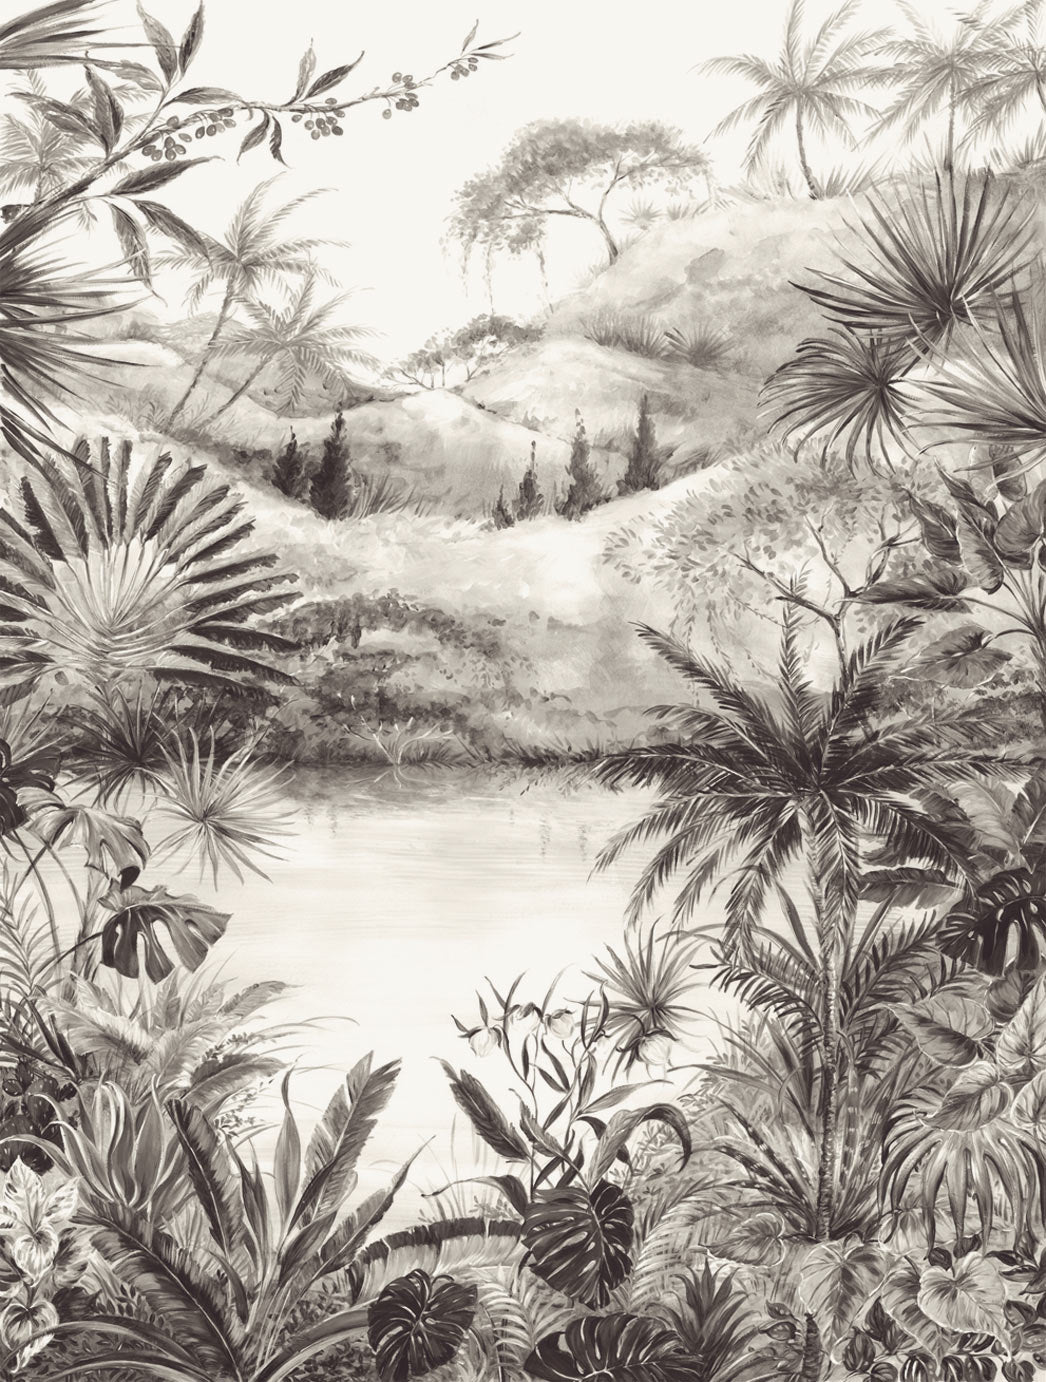 Vivid Tropical Landscape mural